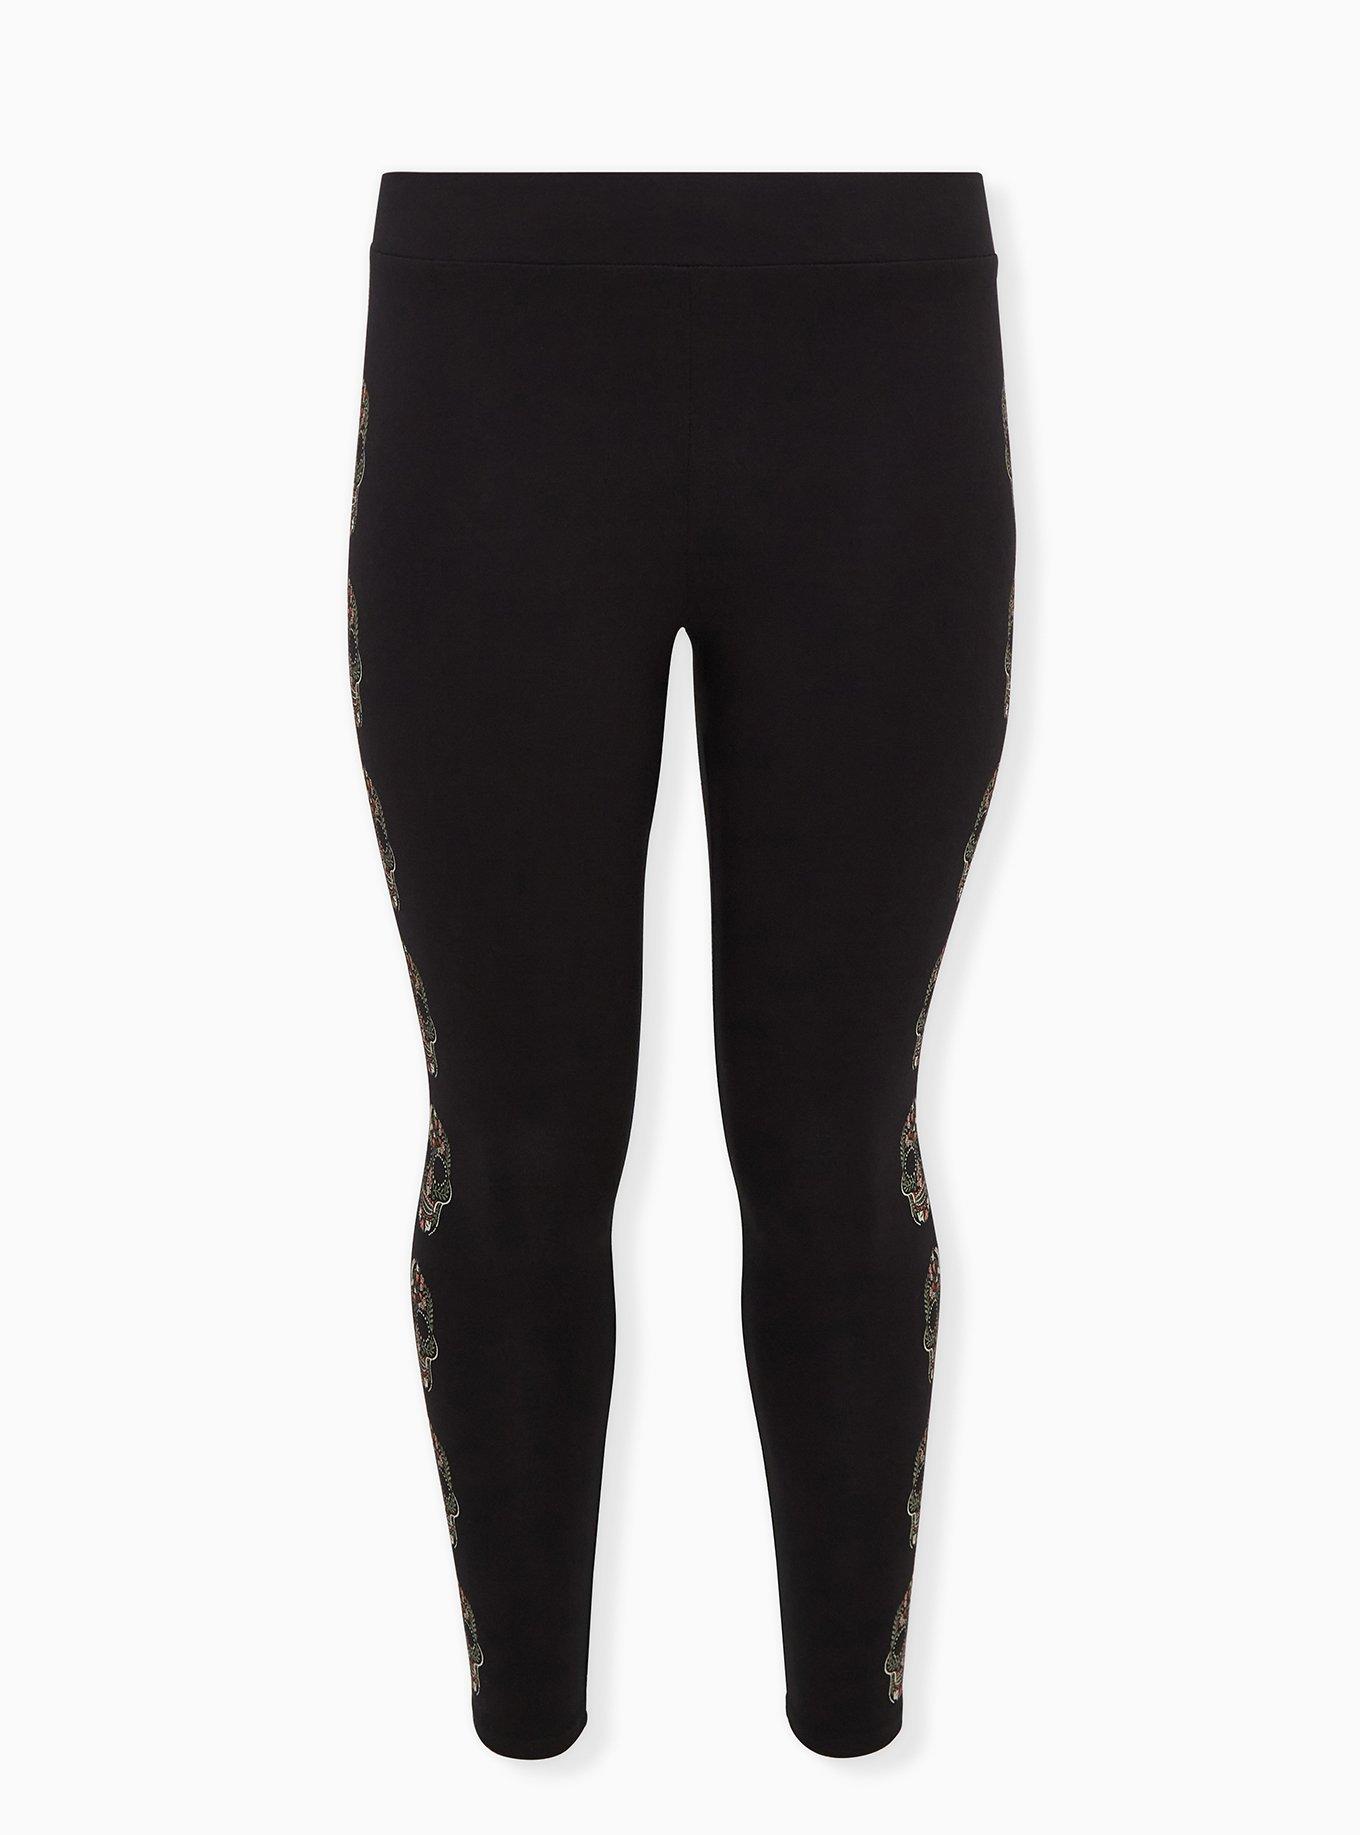 Torrid Premium Leggings - Heart Swirl Red & Black size 2x  Premium leggings,  Sweaters and leggings, Cropped black leggings